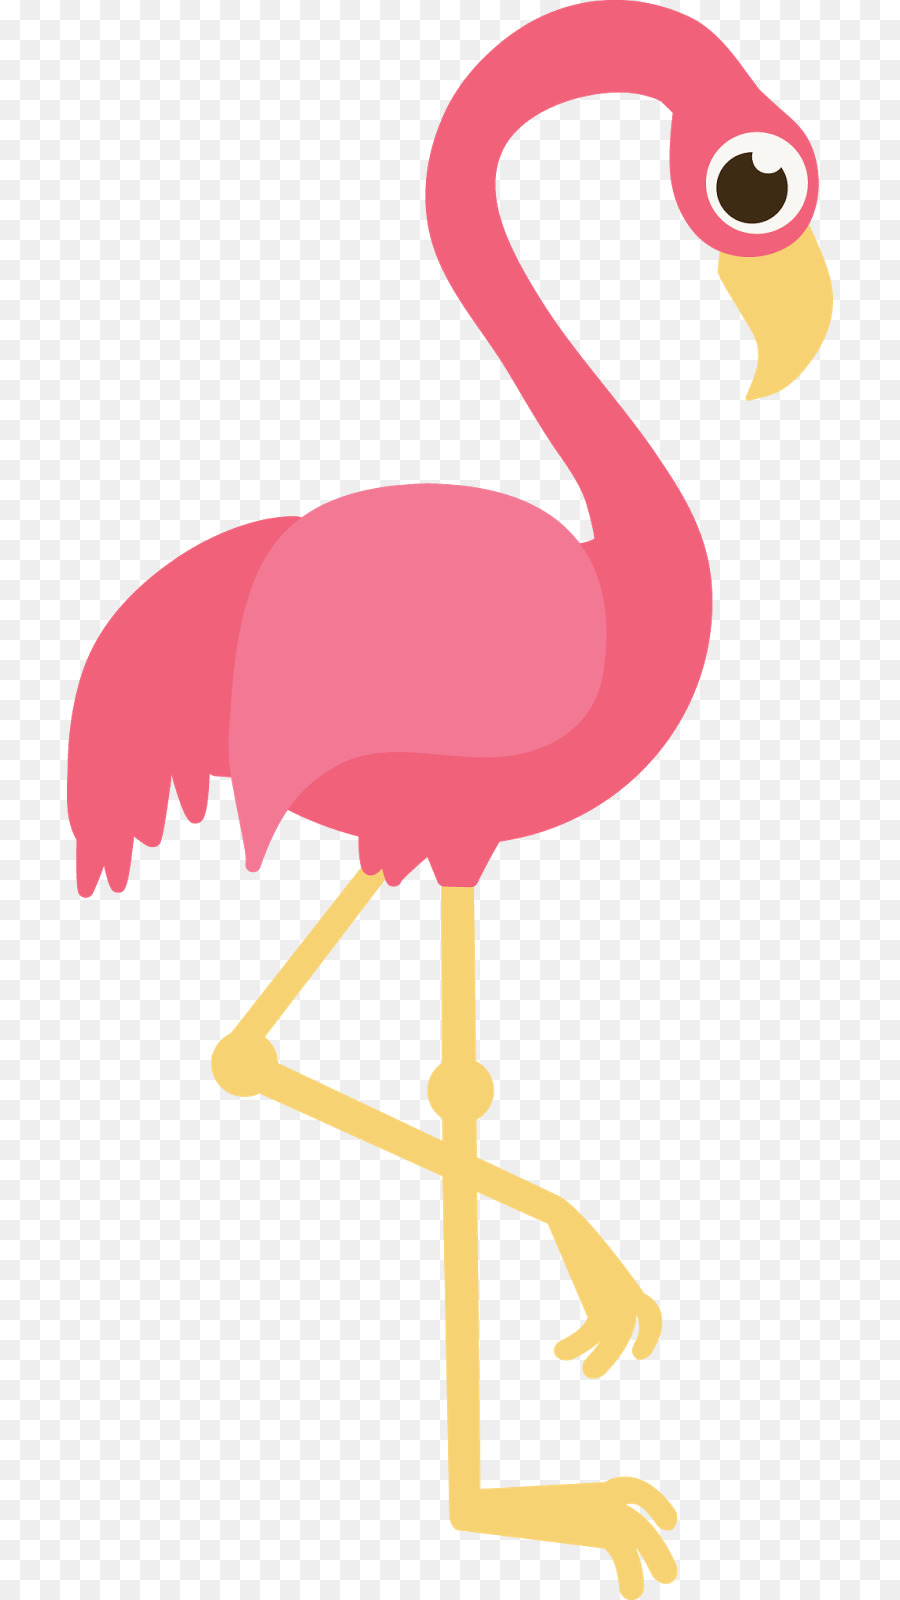 Flamingo Clip art - flamingo png download - 766*1600 - Free Transparent Flamingo png Download.